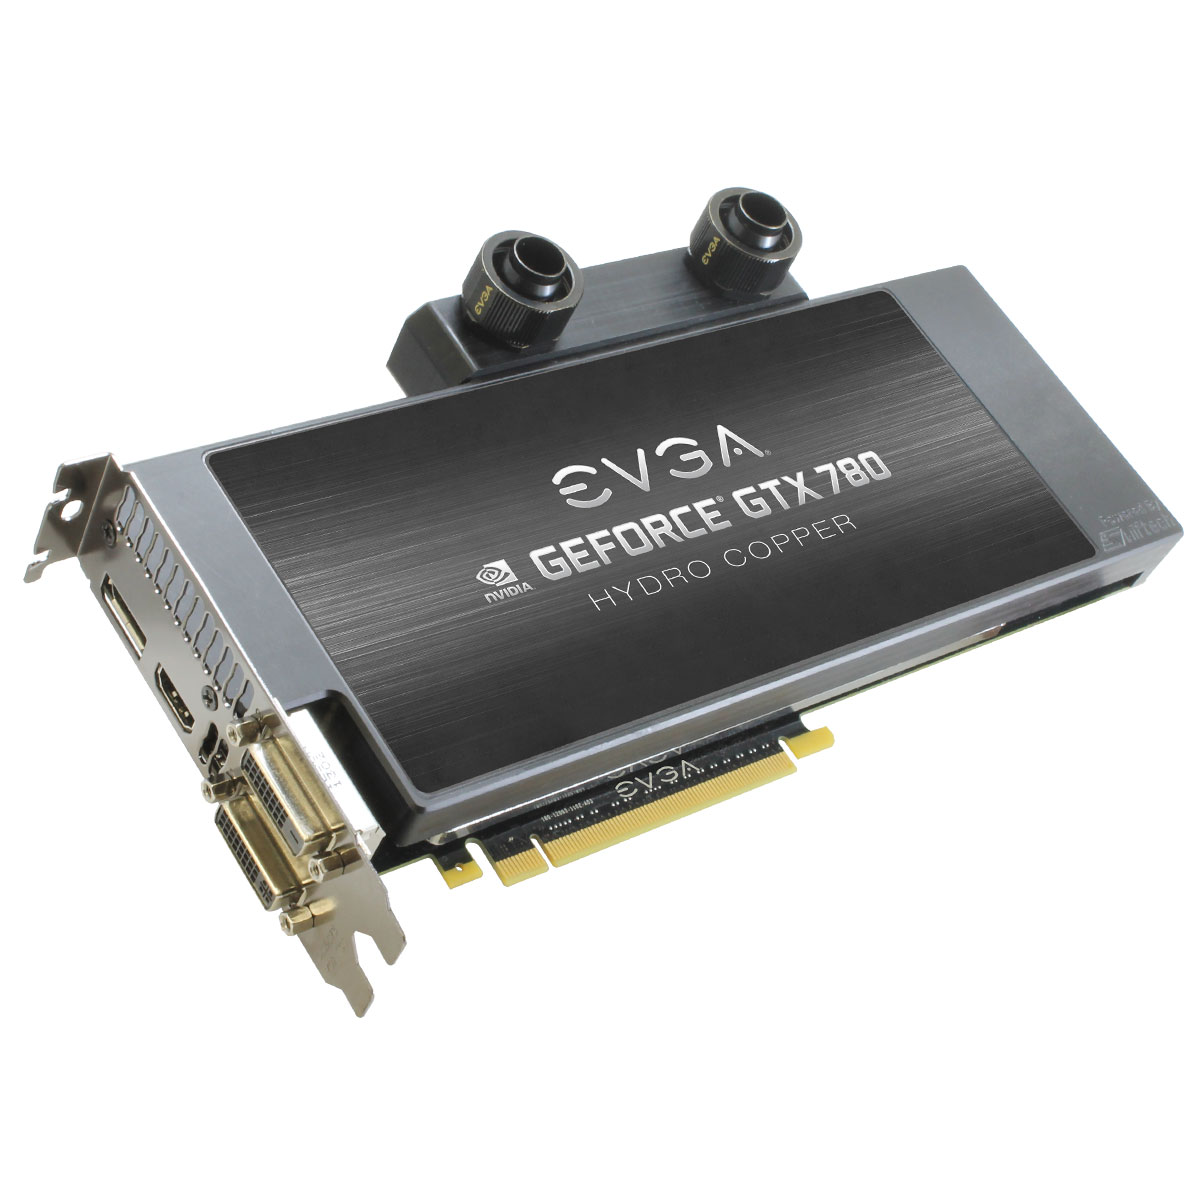 Immagine pubblicata in relazione al seguente contenuto: EVGA annuncia due top card GeForce GTX 780 con Hydro Copper | Nome immagine: news19600_EVGA-GeForce-GTX-780-Watercooler_2.jpg